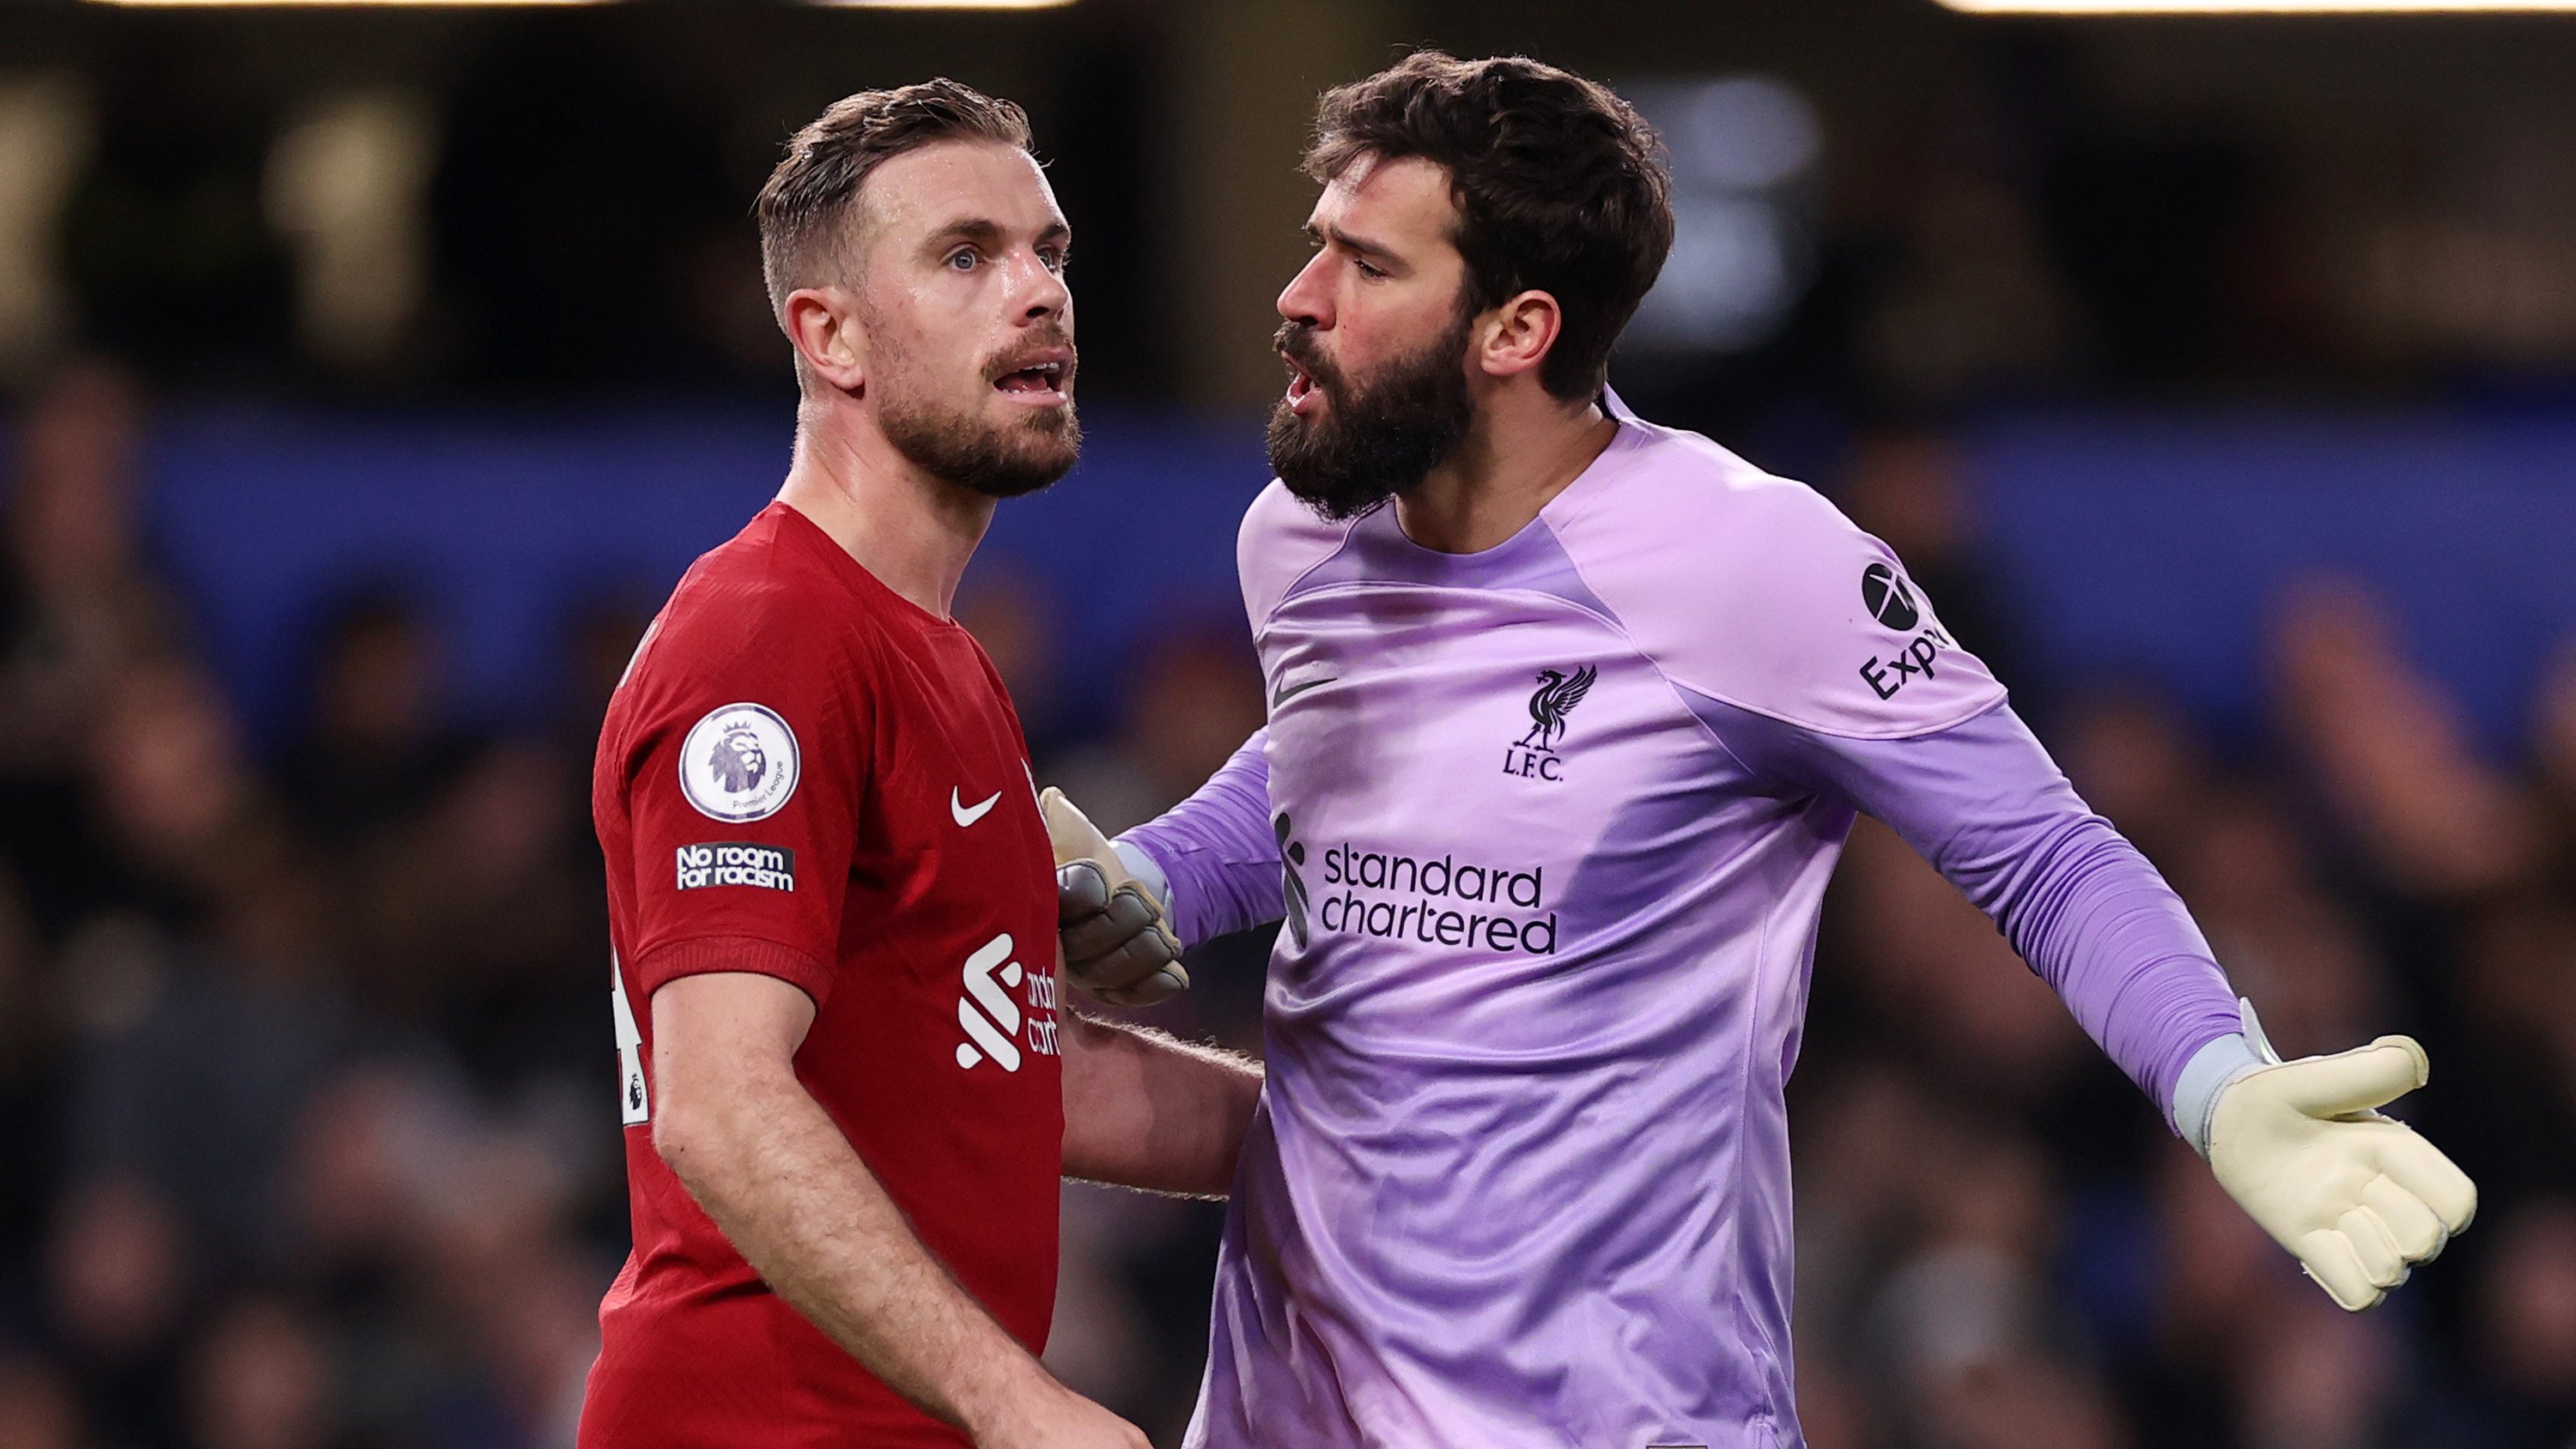 Estado de nervos do Liverpool foi bem visível numa discussão mais acesa entre Alisson e Jordan Henderson no último quarto de hora do jogo